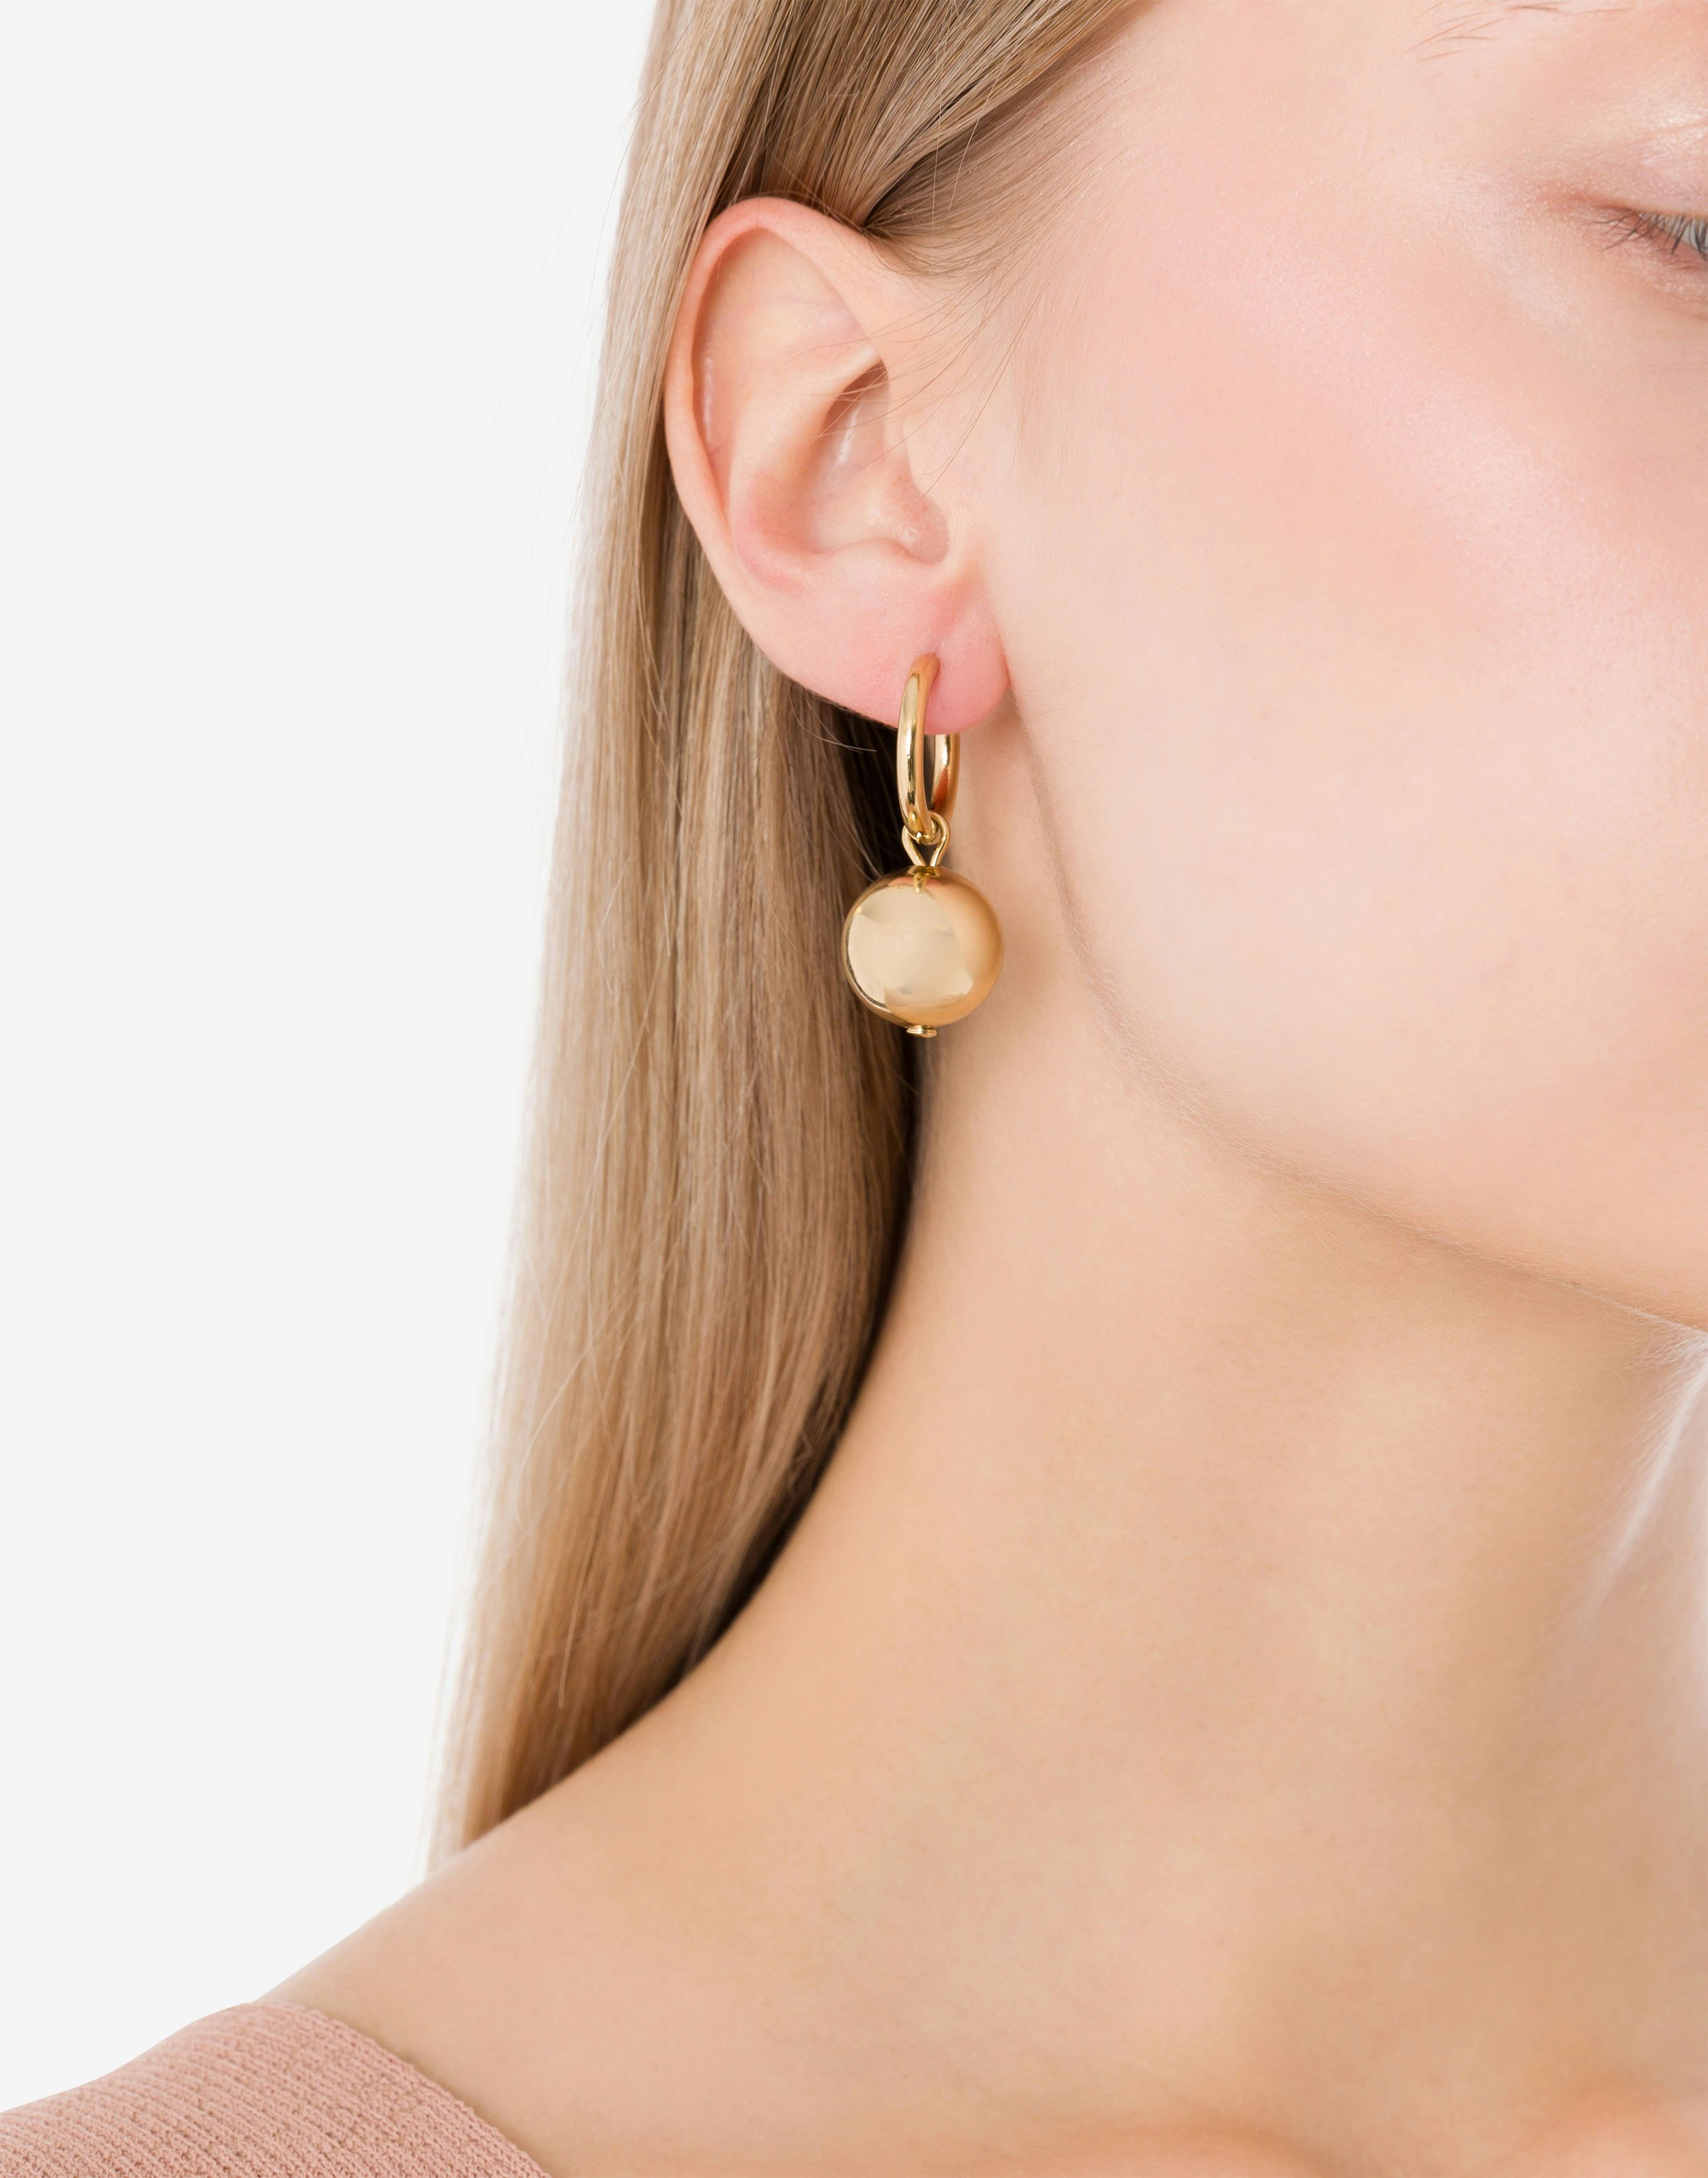 Single piercing earring